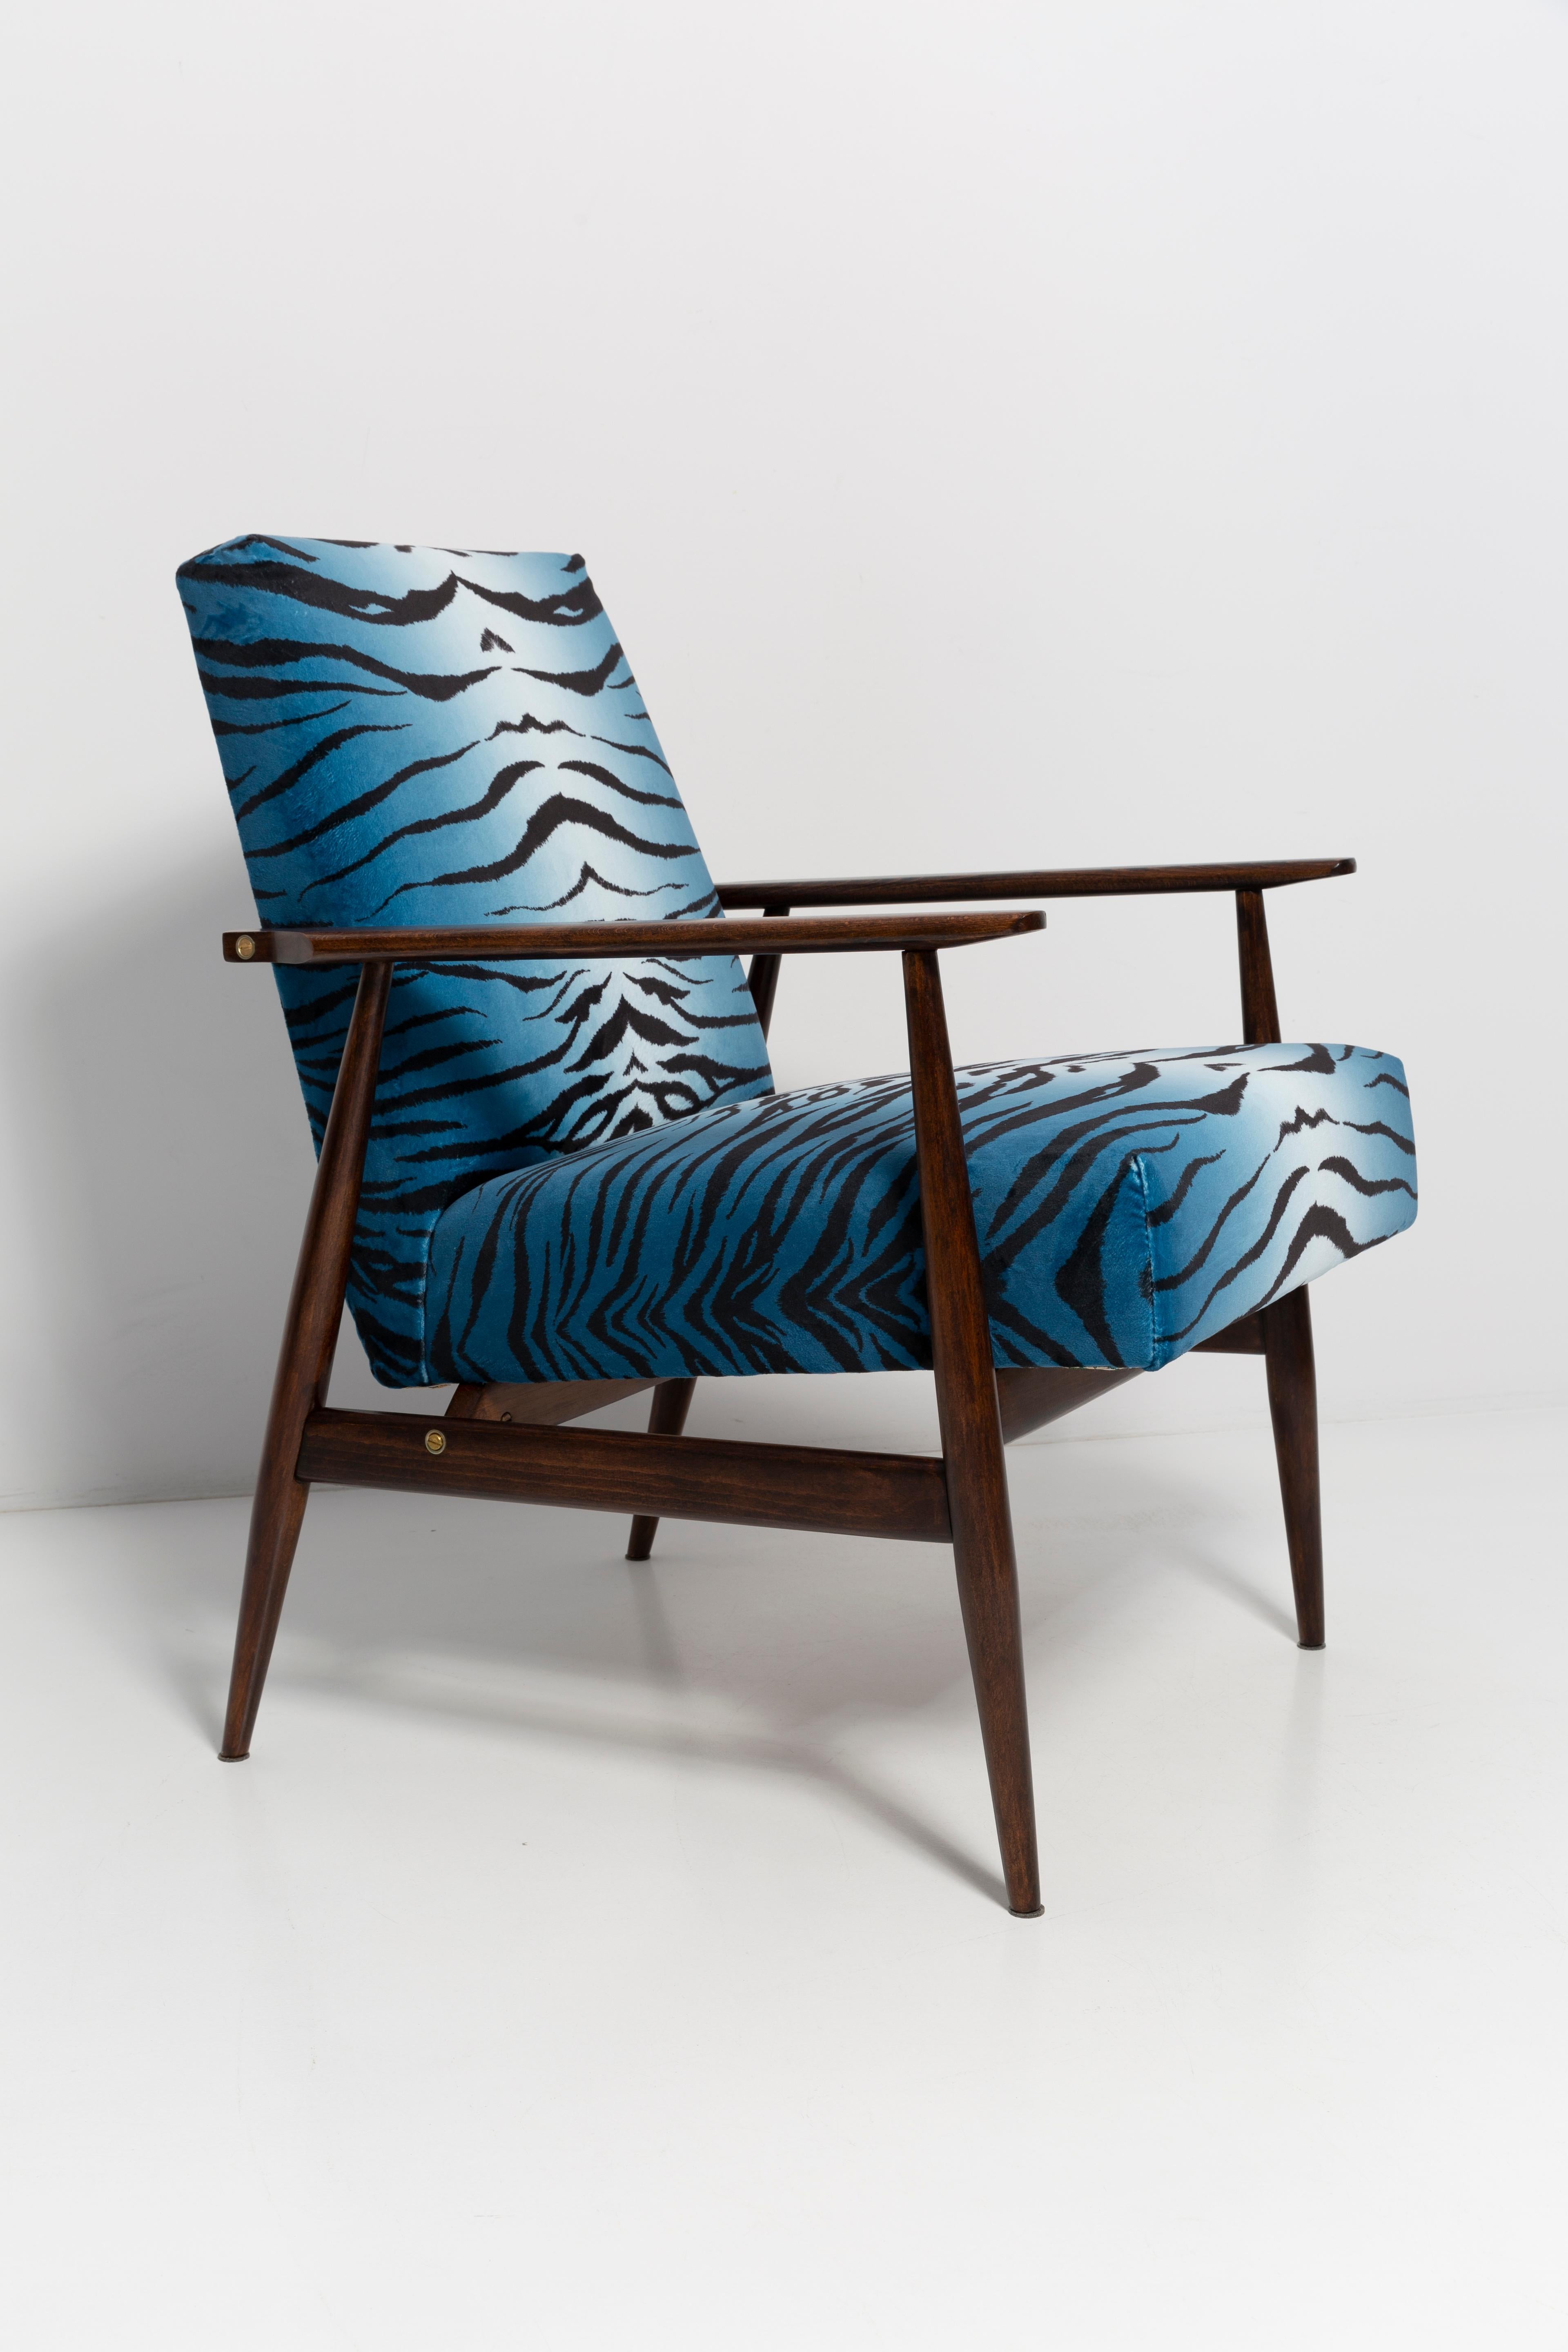 Ein schöner, restaurierter Sessel, entworfen von Henryk Lis. Möbel nach kompletter Renovierung durch Schreiner und Polsterei. Der Stoff, mit dem Rückenlehne und Sitzfläche bezogen sind, ist ein hochwertiger italienischer Samtbezug, der mit einem